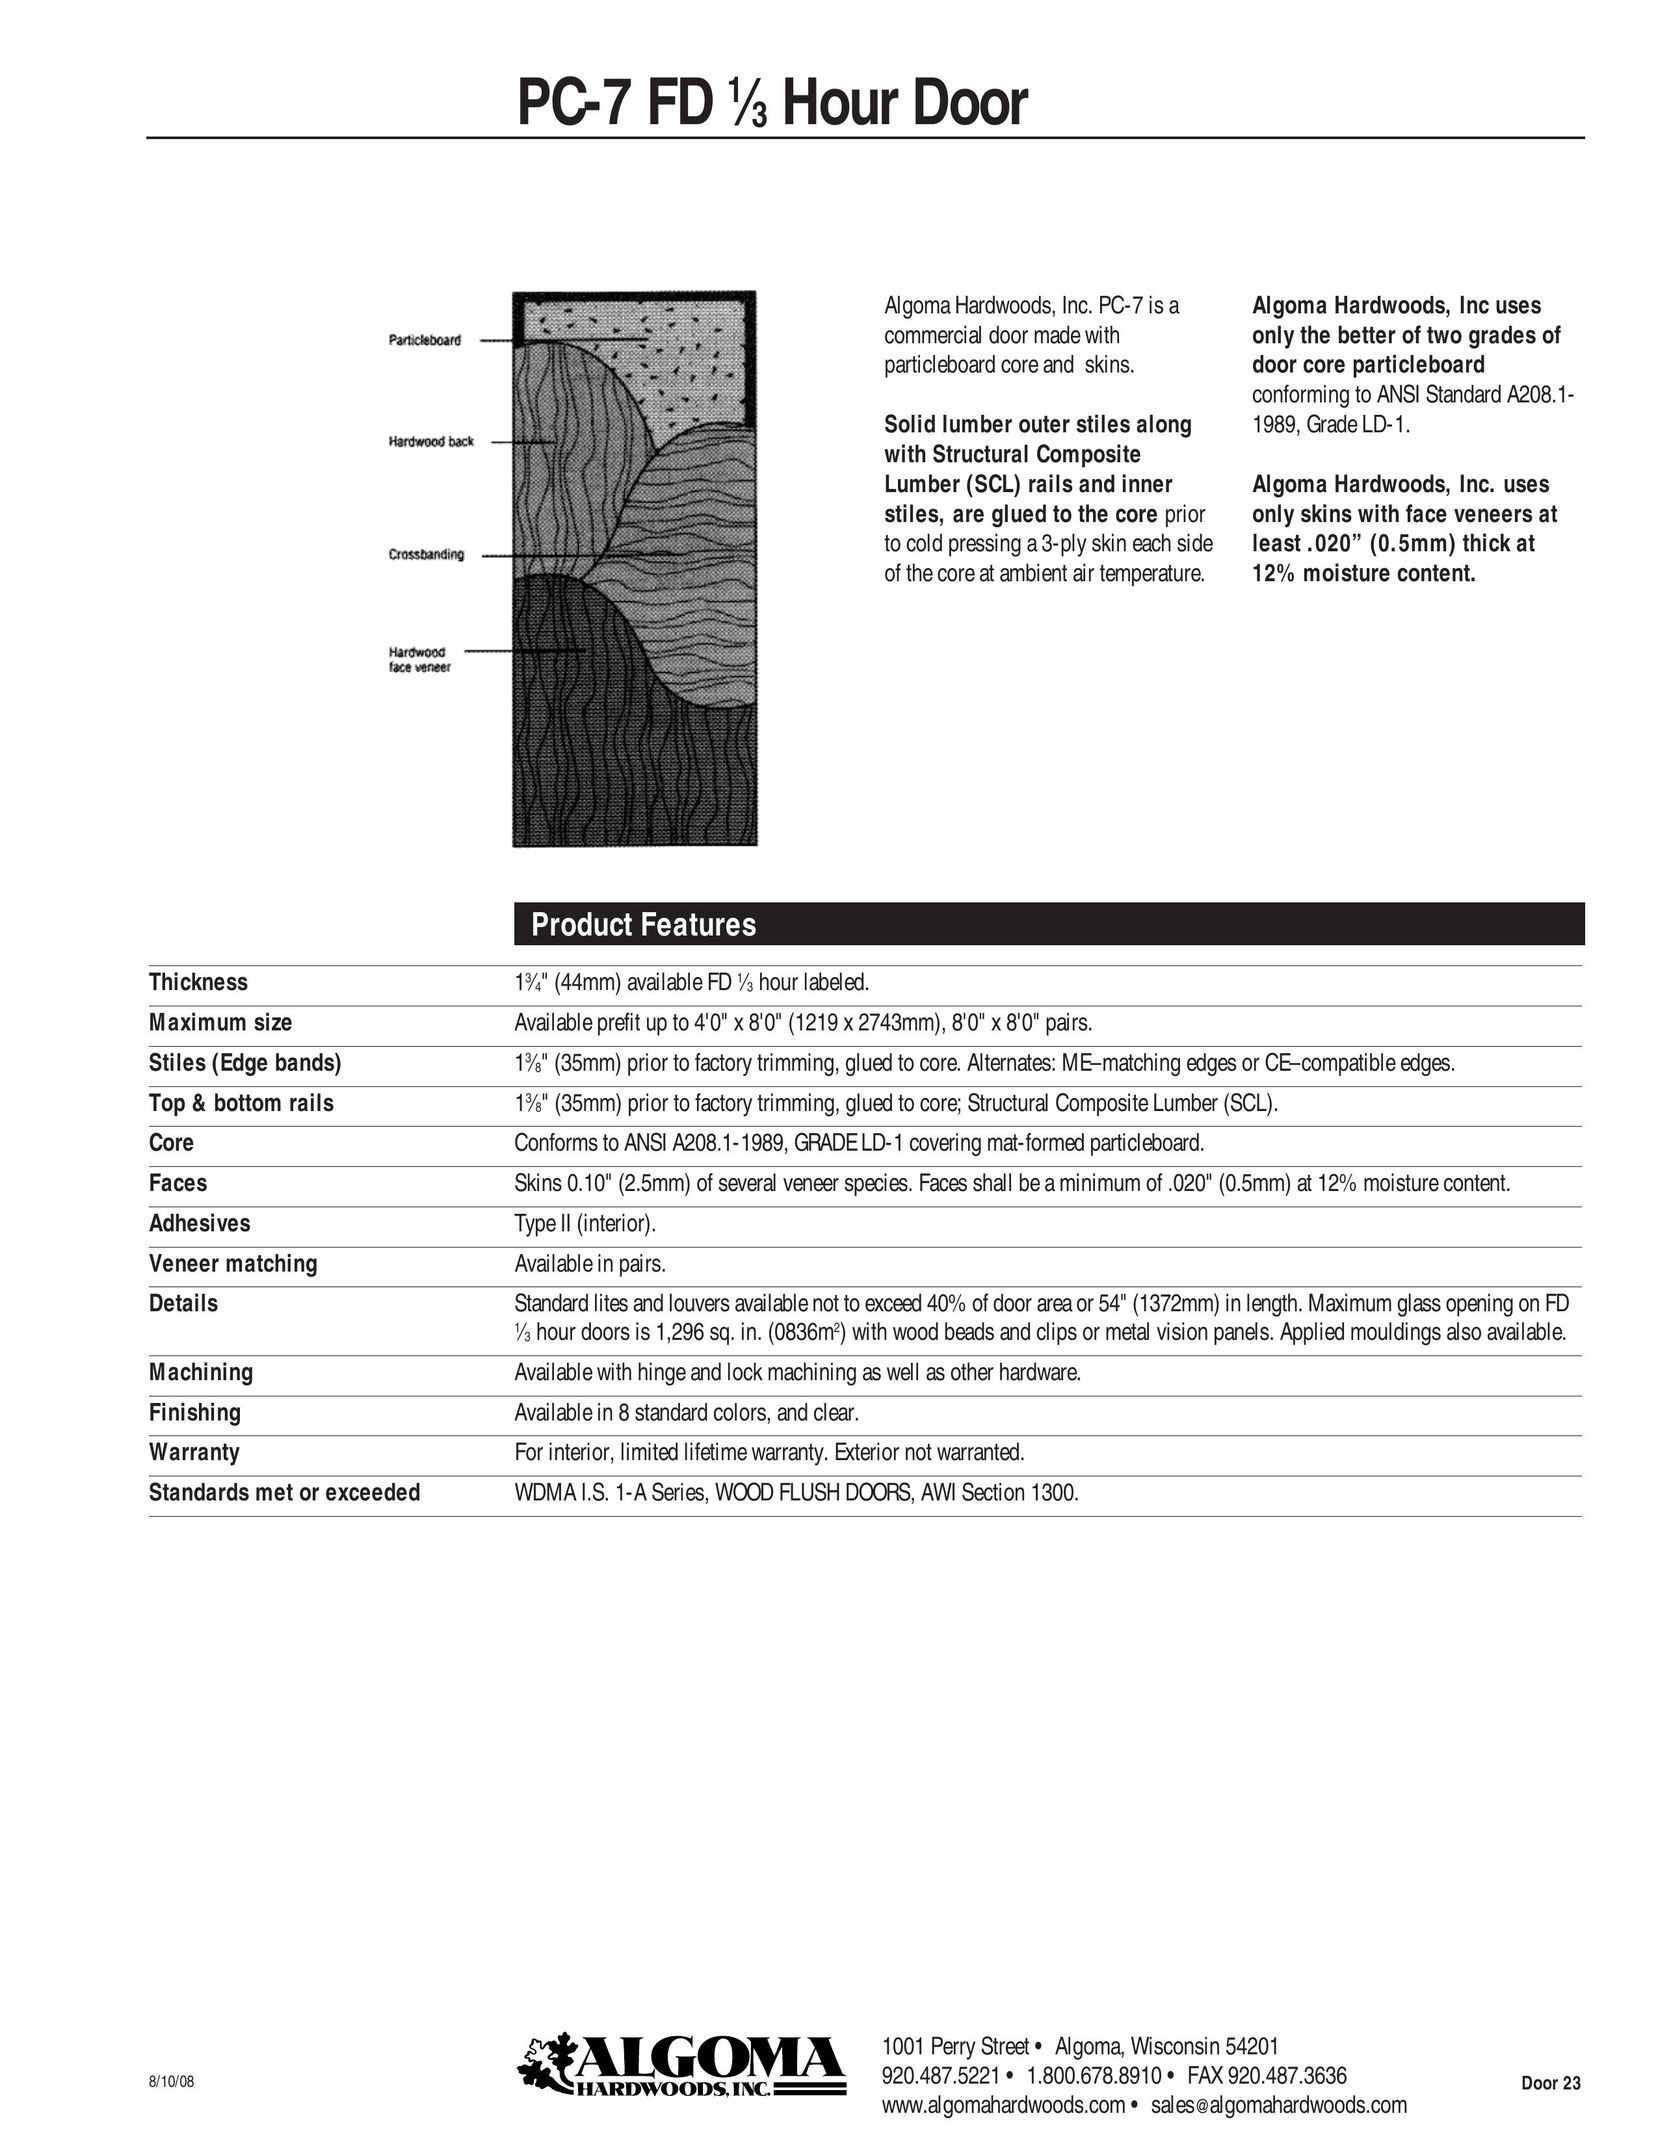 Algoma Hardwoods PC-7 FD Door User Manual